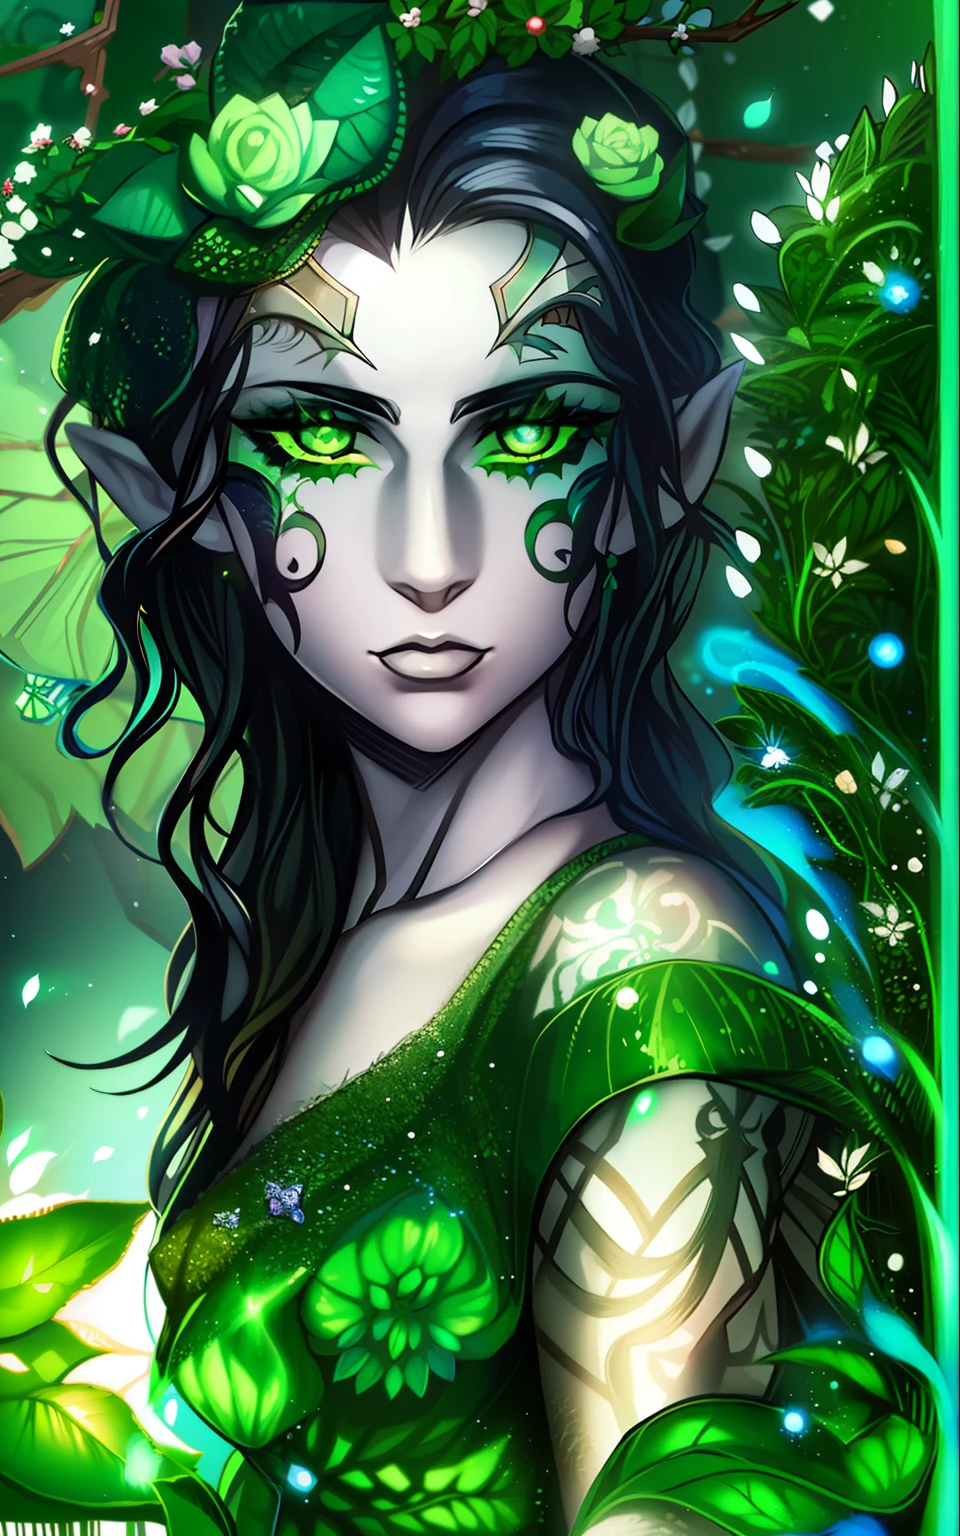 Un elfo con piel blanca pálida, pelo negro ondulado, ojos verdes, con tatuajes faciales verdes, Lleva un vestido que parece estar hecho de plantas